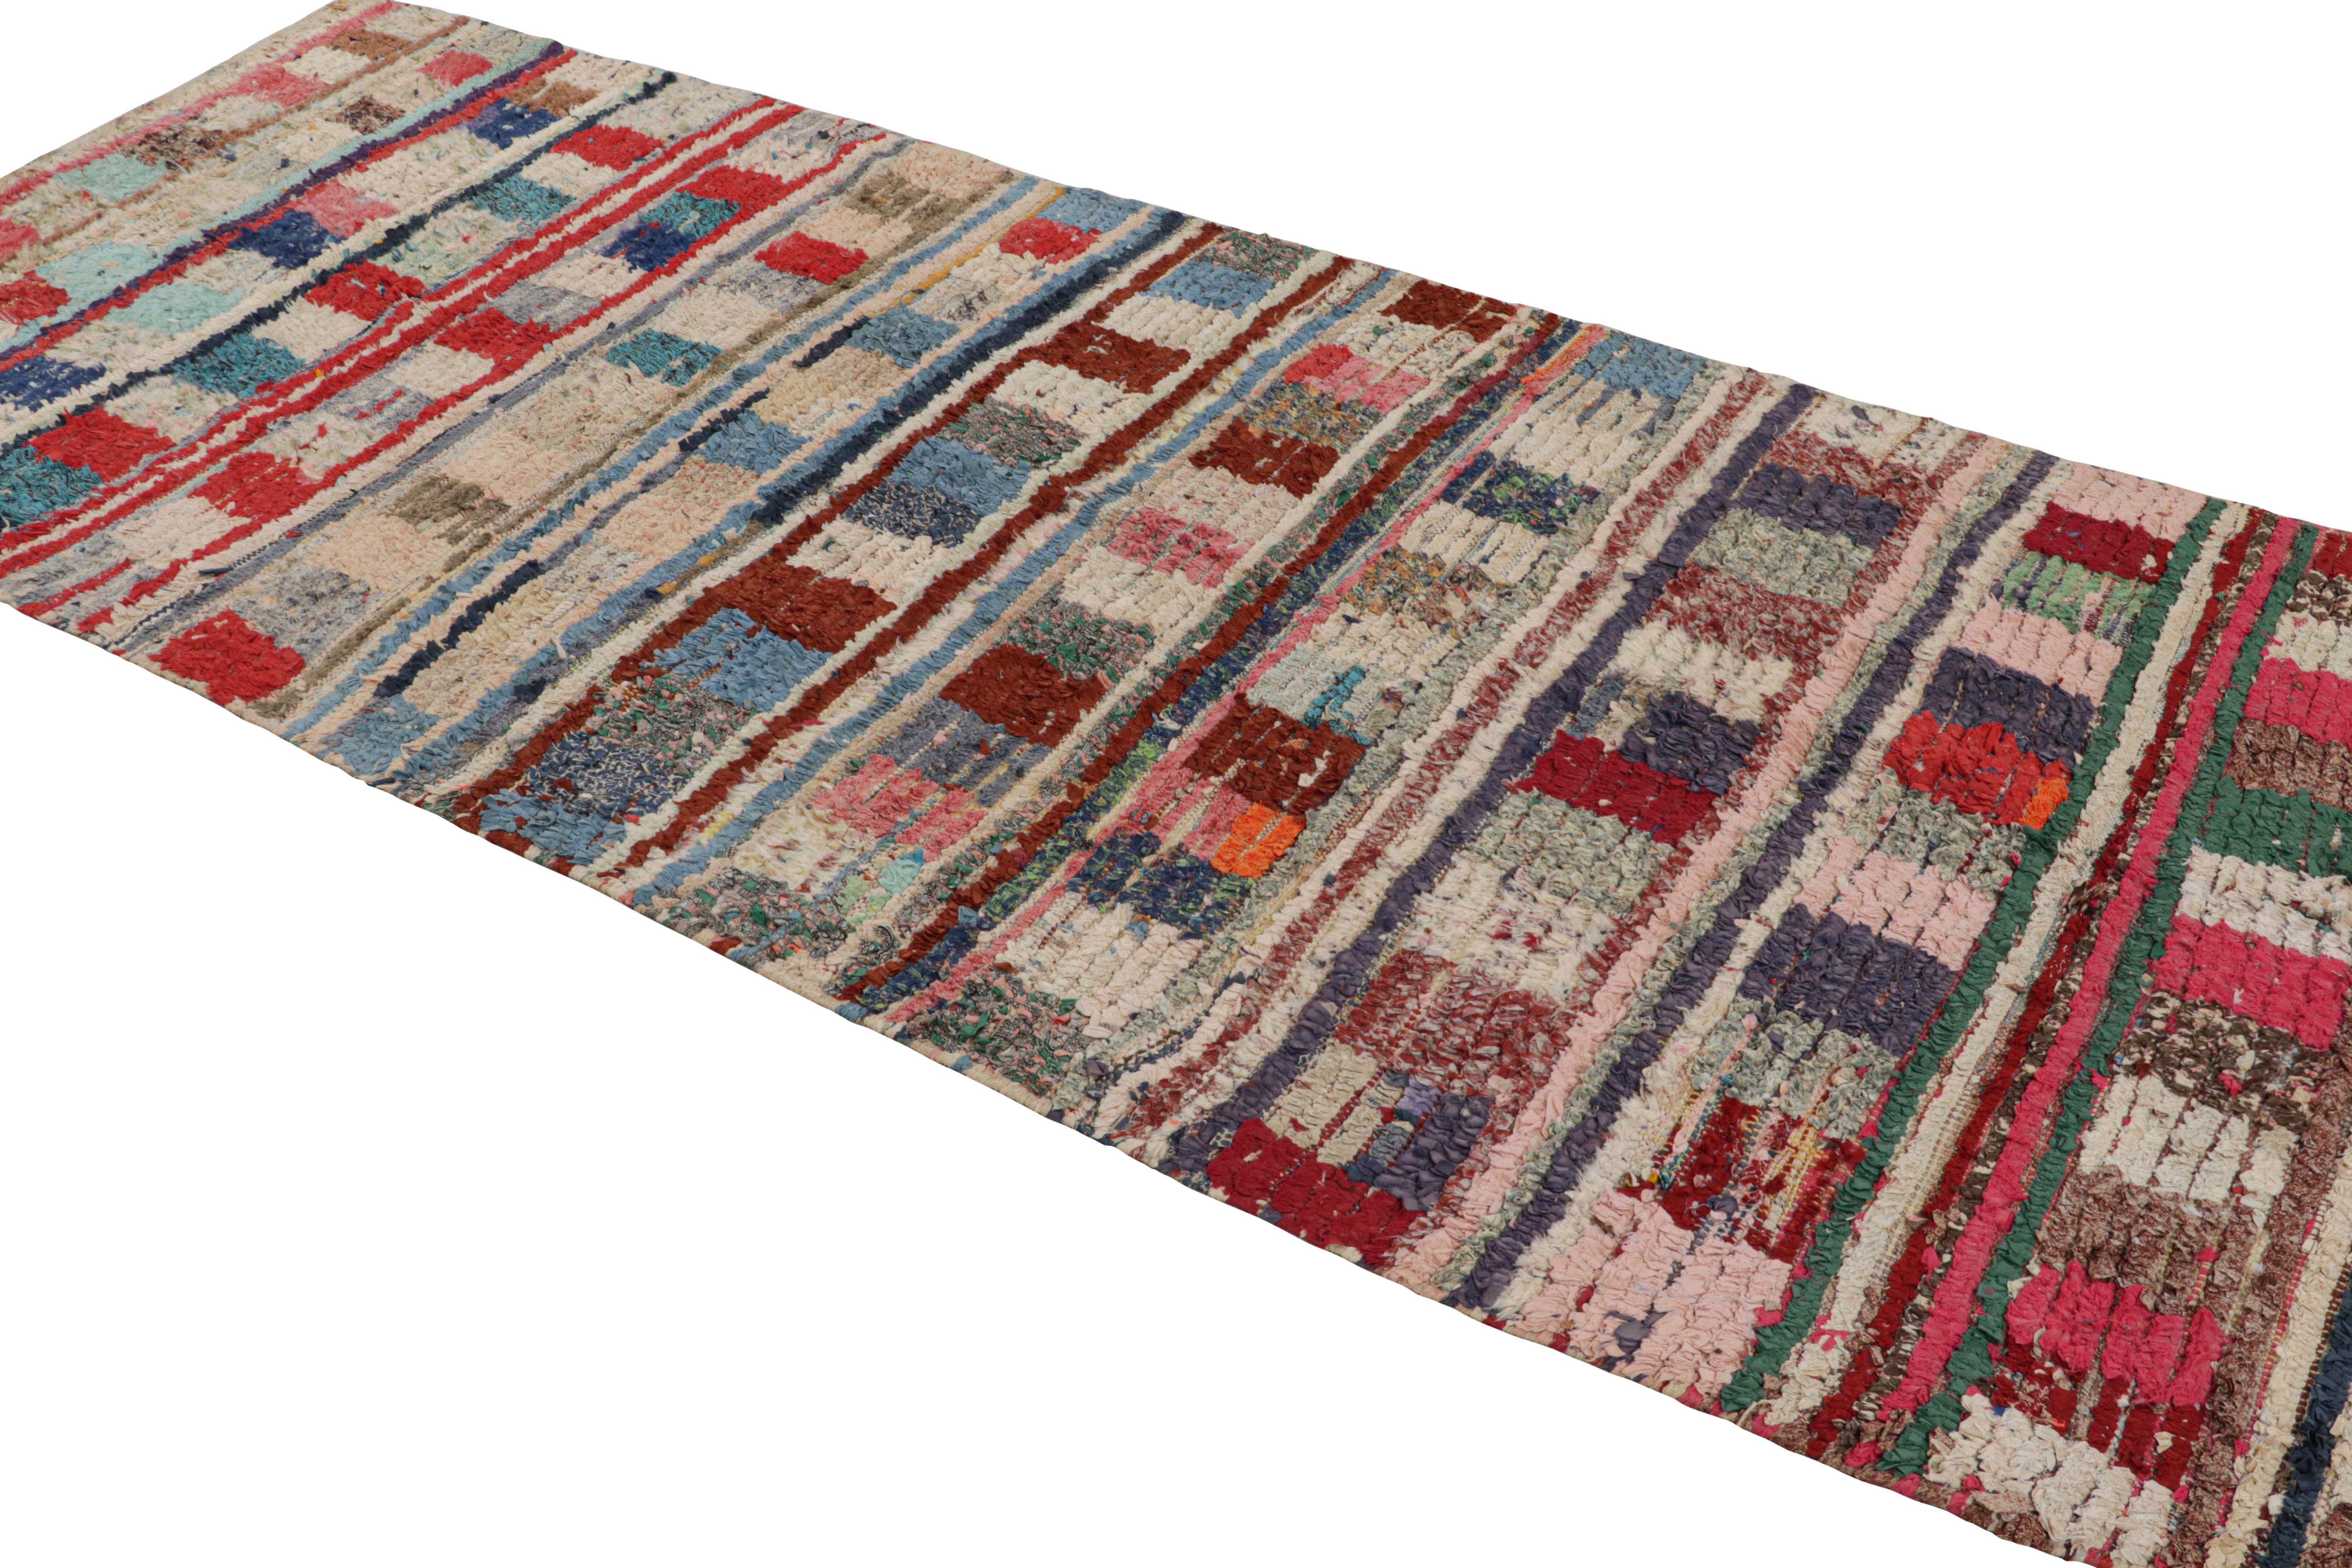 Noué à la main en laine et en coton vers 1950-1960, ce tapis marocain vintage 5x10 proviendrait de la tribu Azilal. 

Sur le Design : 

Ce tapis présente des motifs polychromes dans des tons dominants de beige, brun, bleu, rouge et rose. Les yeux